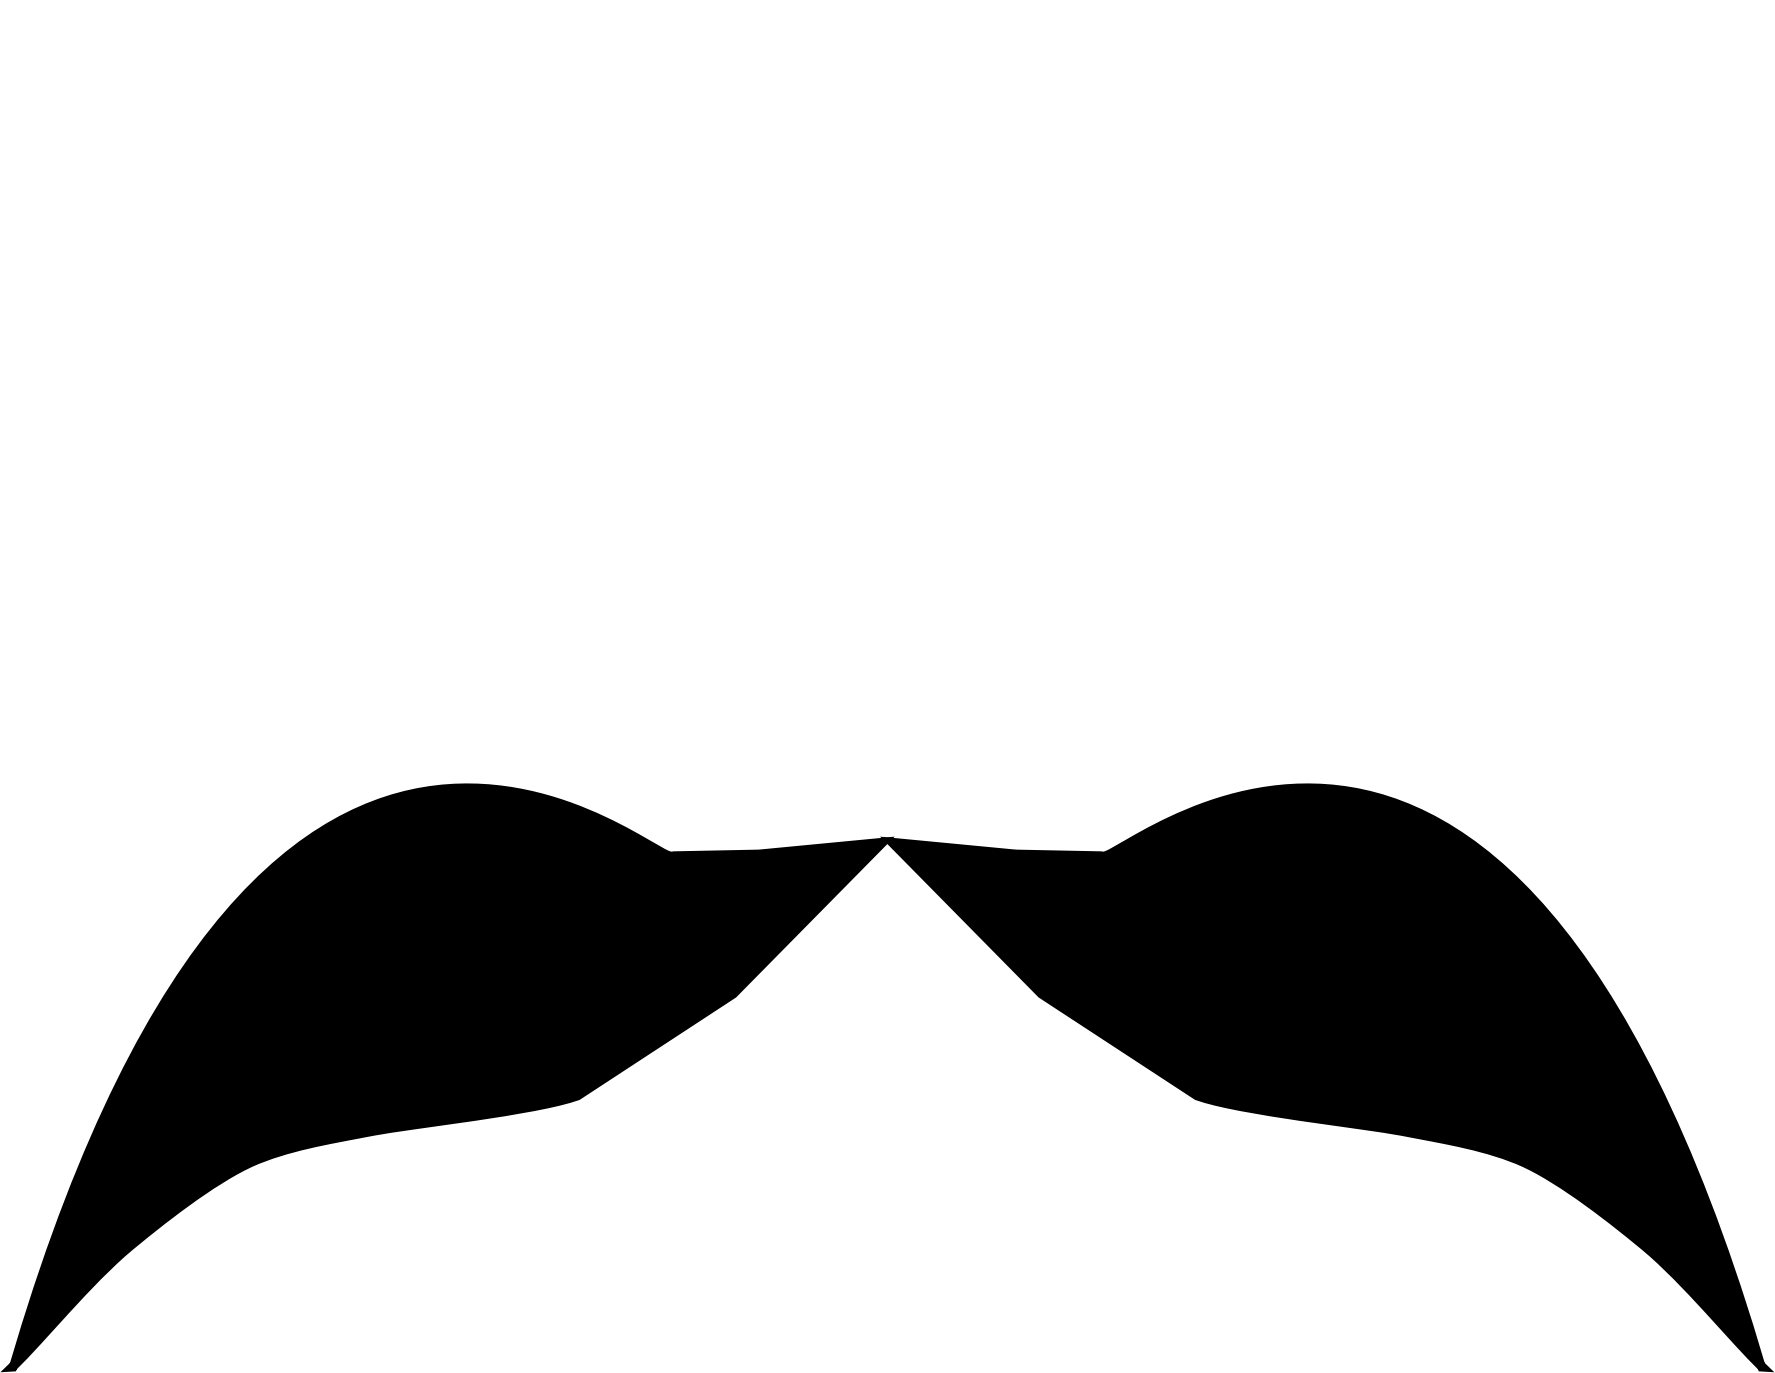 mustache clipart pdf